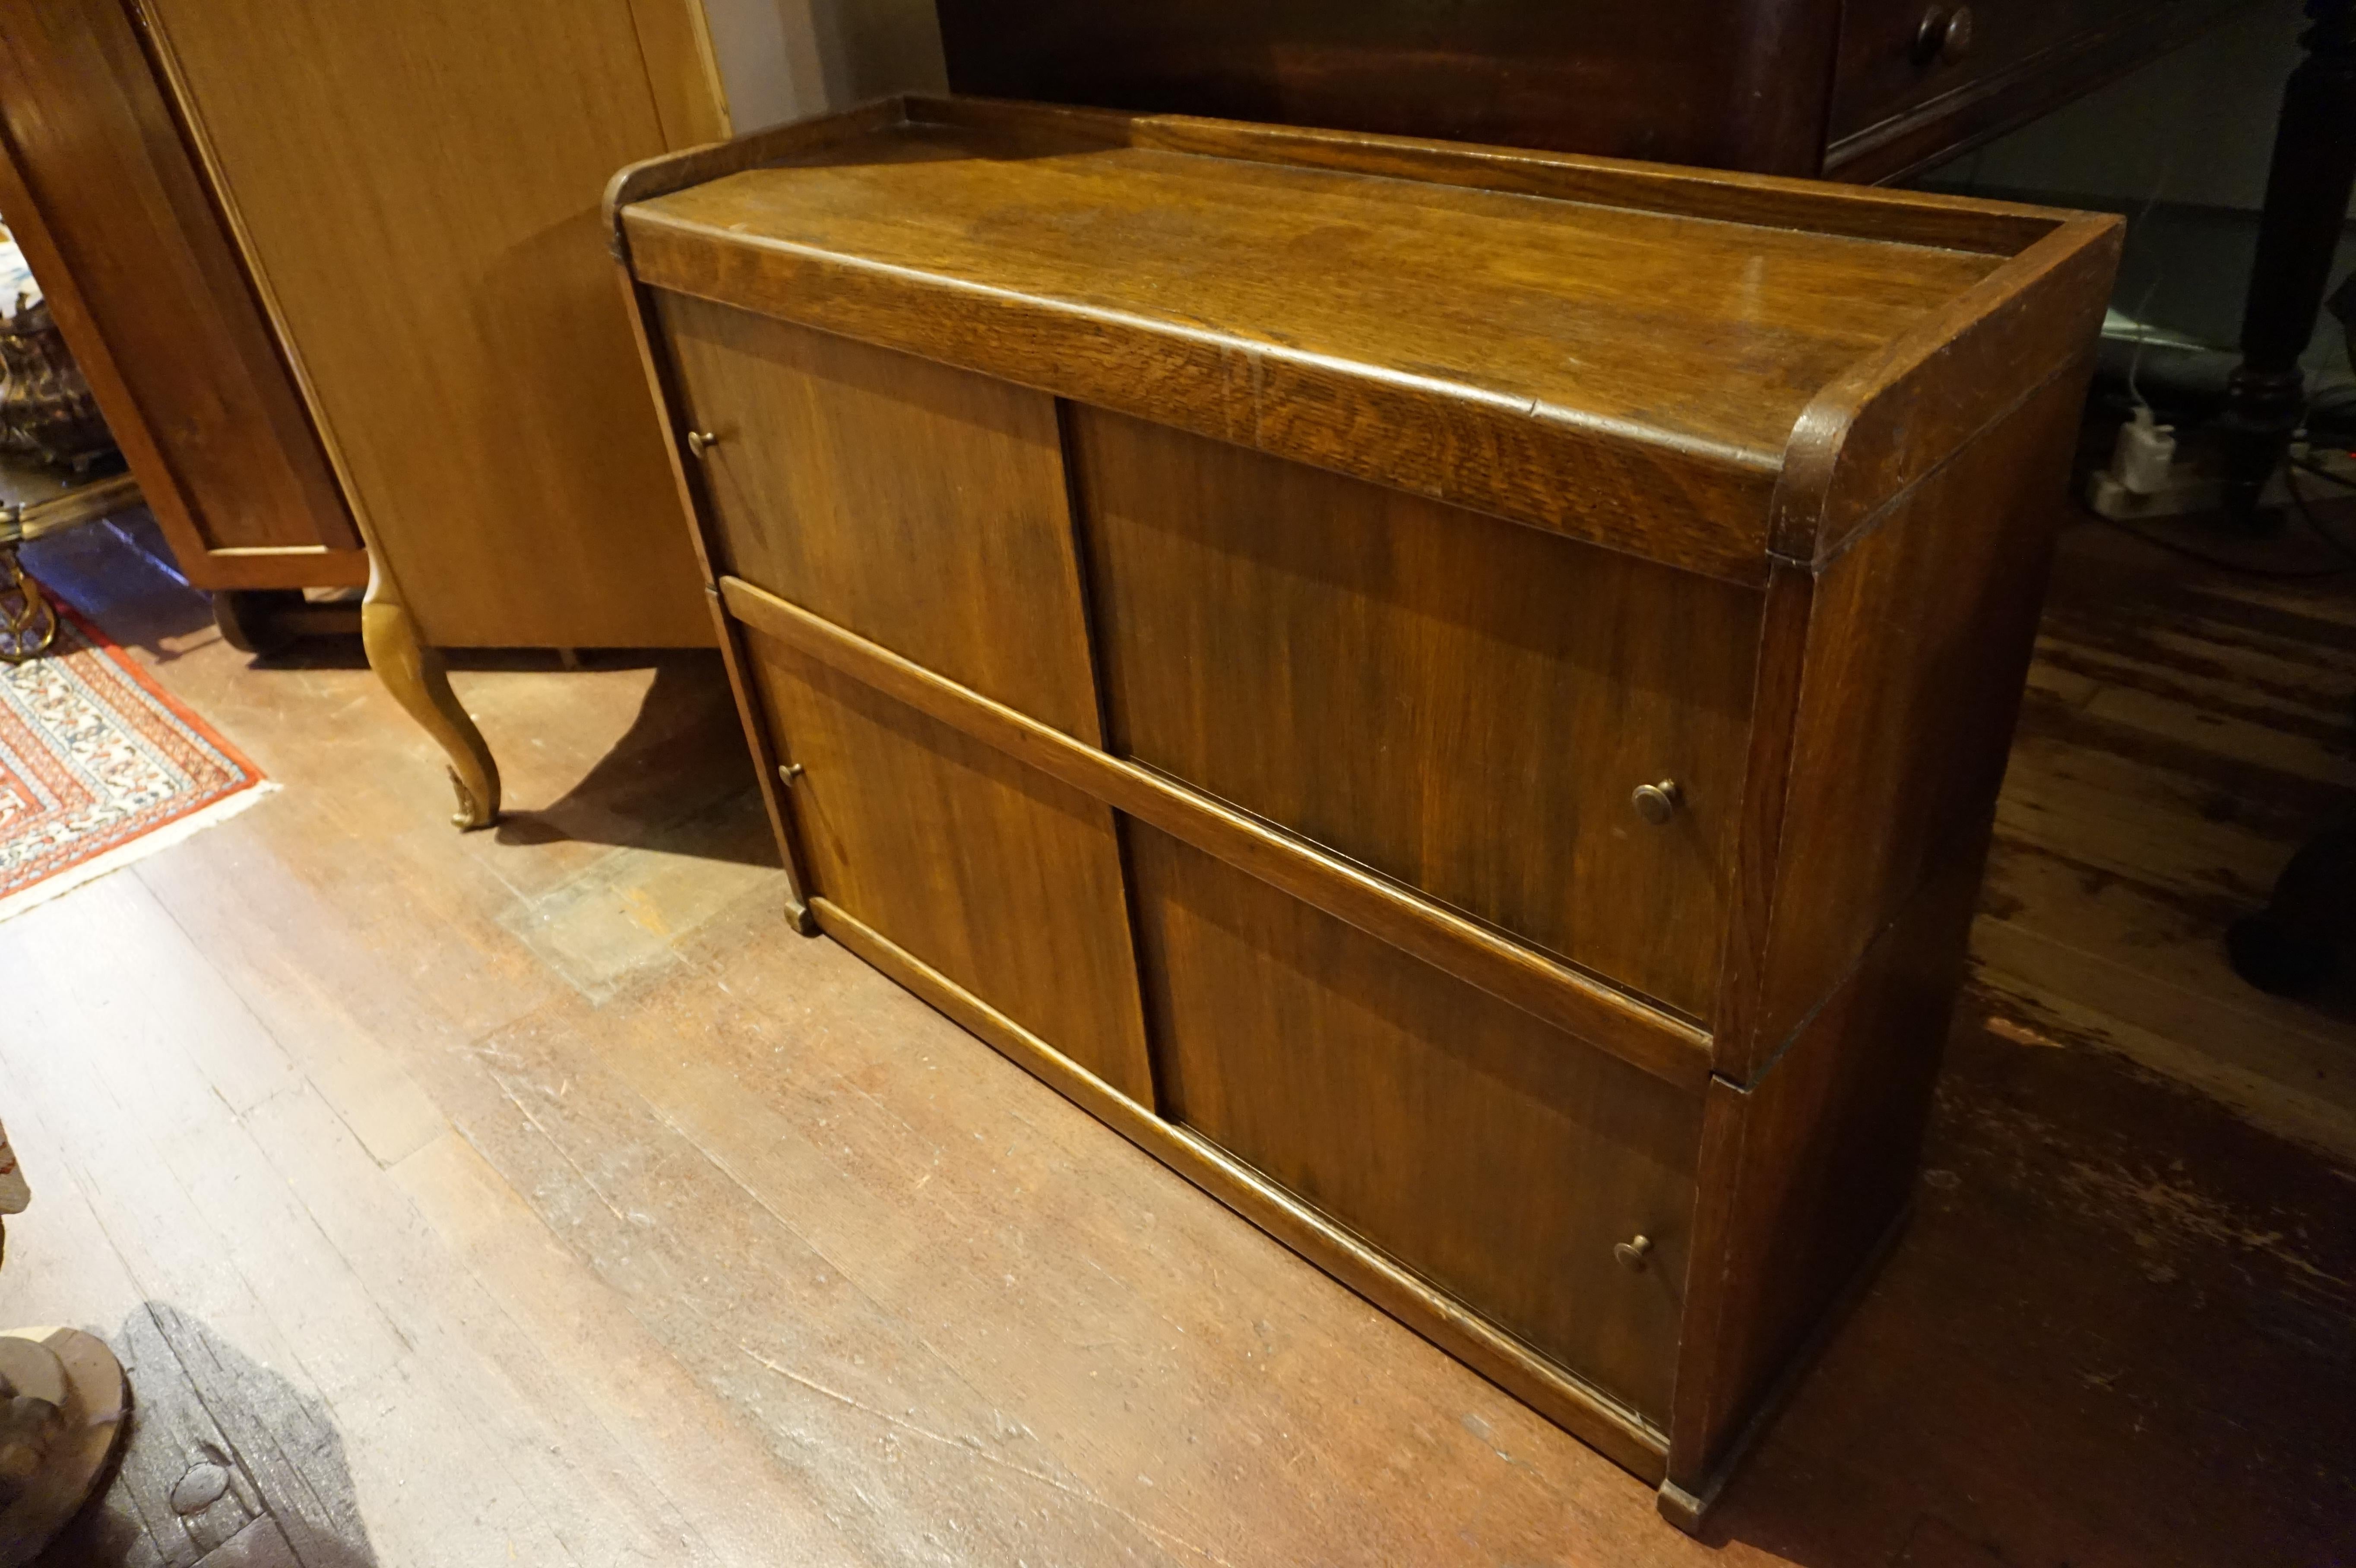 Englischer Barristers-Schreibtischschrank aus Eiche mit Schiebeplatten, 1890-1900. Die Paneele gleiten mühelos. Nützliches, schlichtes Stück mit eleganter Konstruktion.
 
   